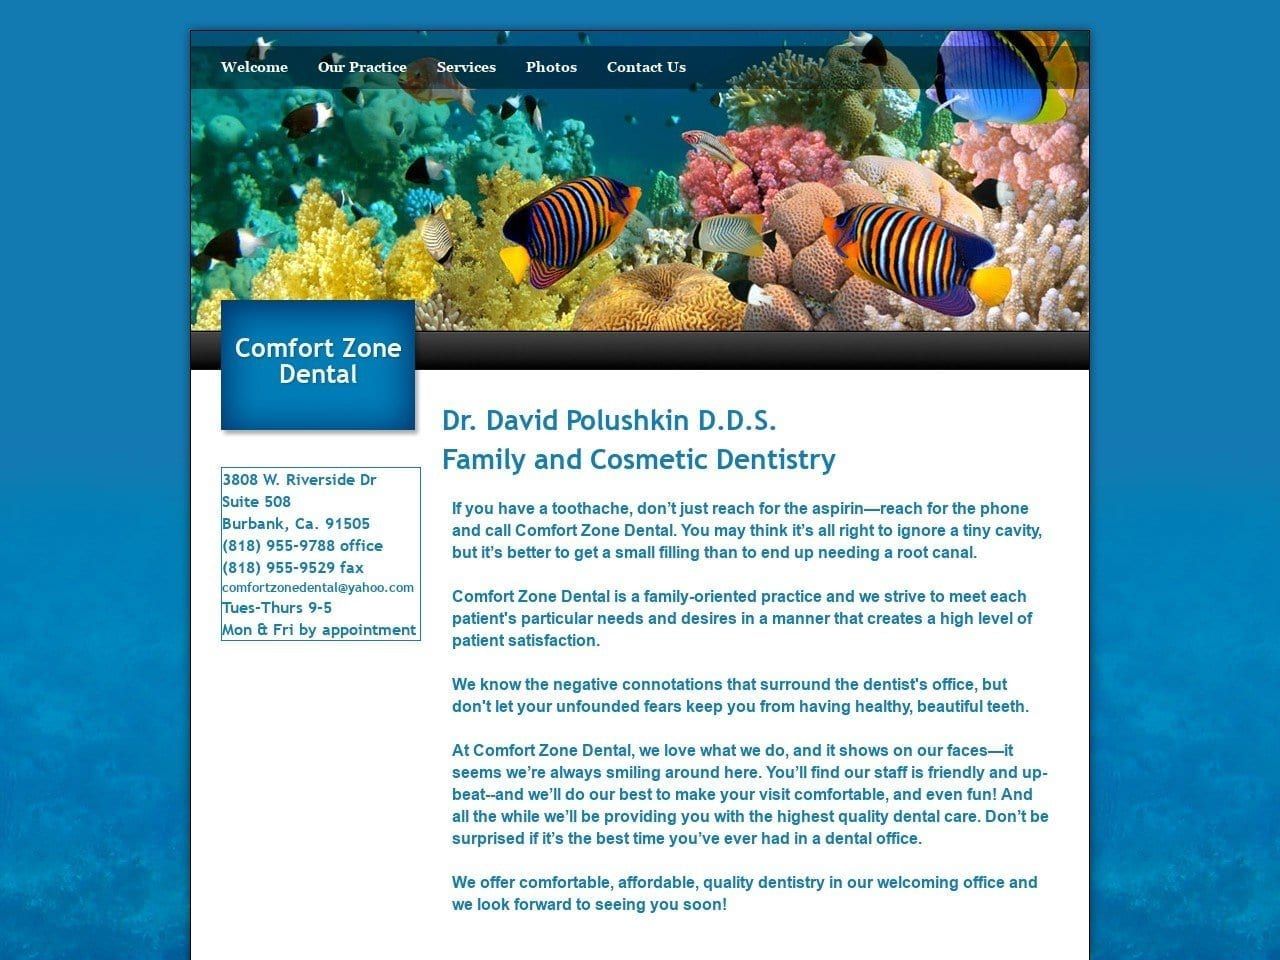 Comfort Zone Dental Website Screenshot from comfortzonedental.com